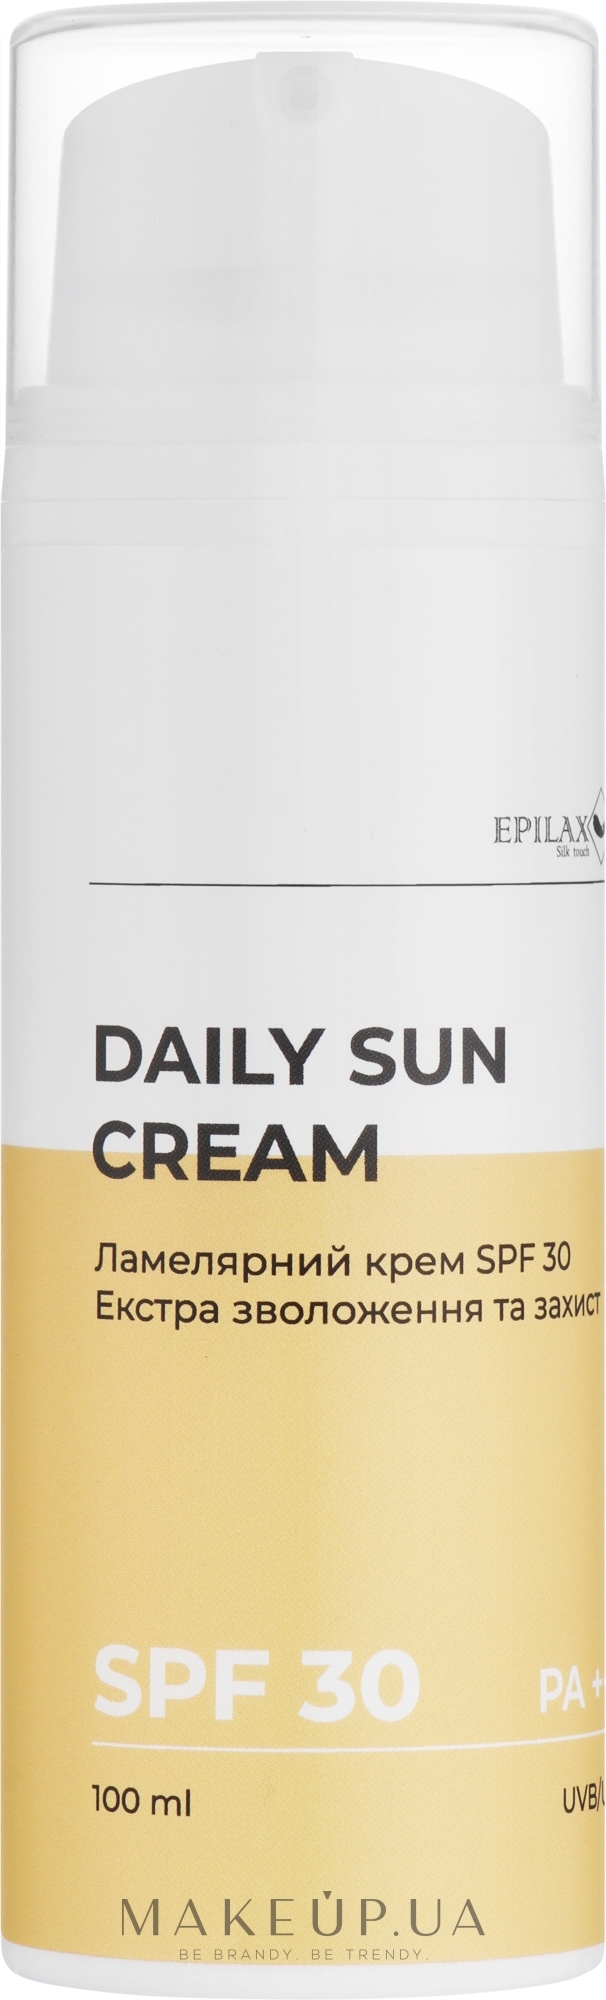 Ламелярный крем SPF 30 экстра увлажнение и защита - Epilax Silk Touch Daily Sun Cream SPF 30 — фото 100ml